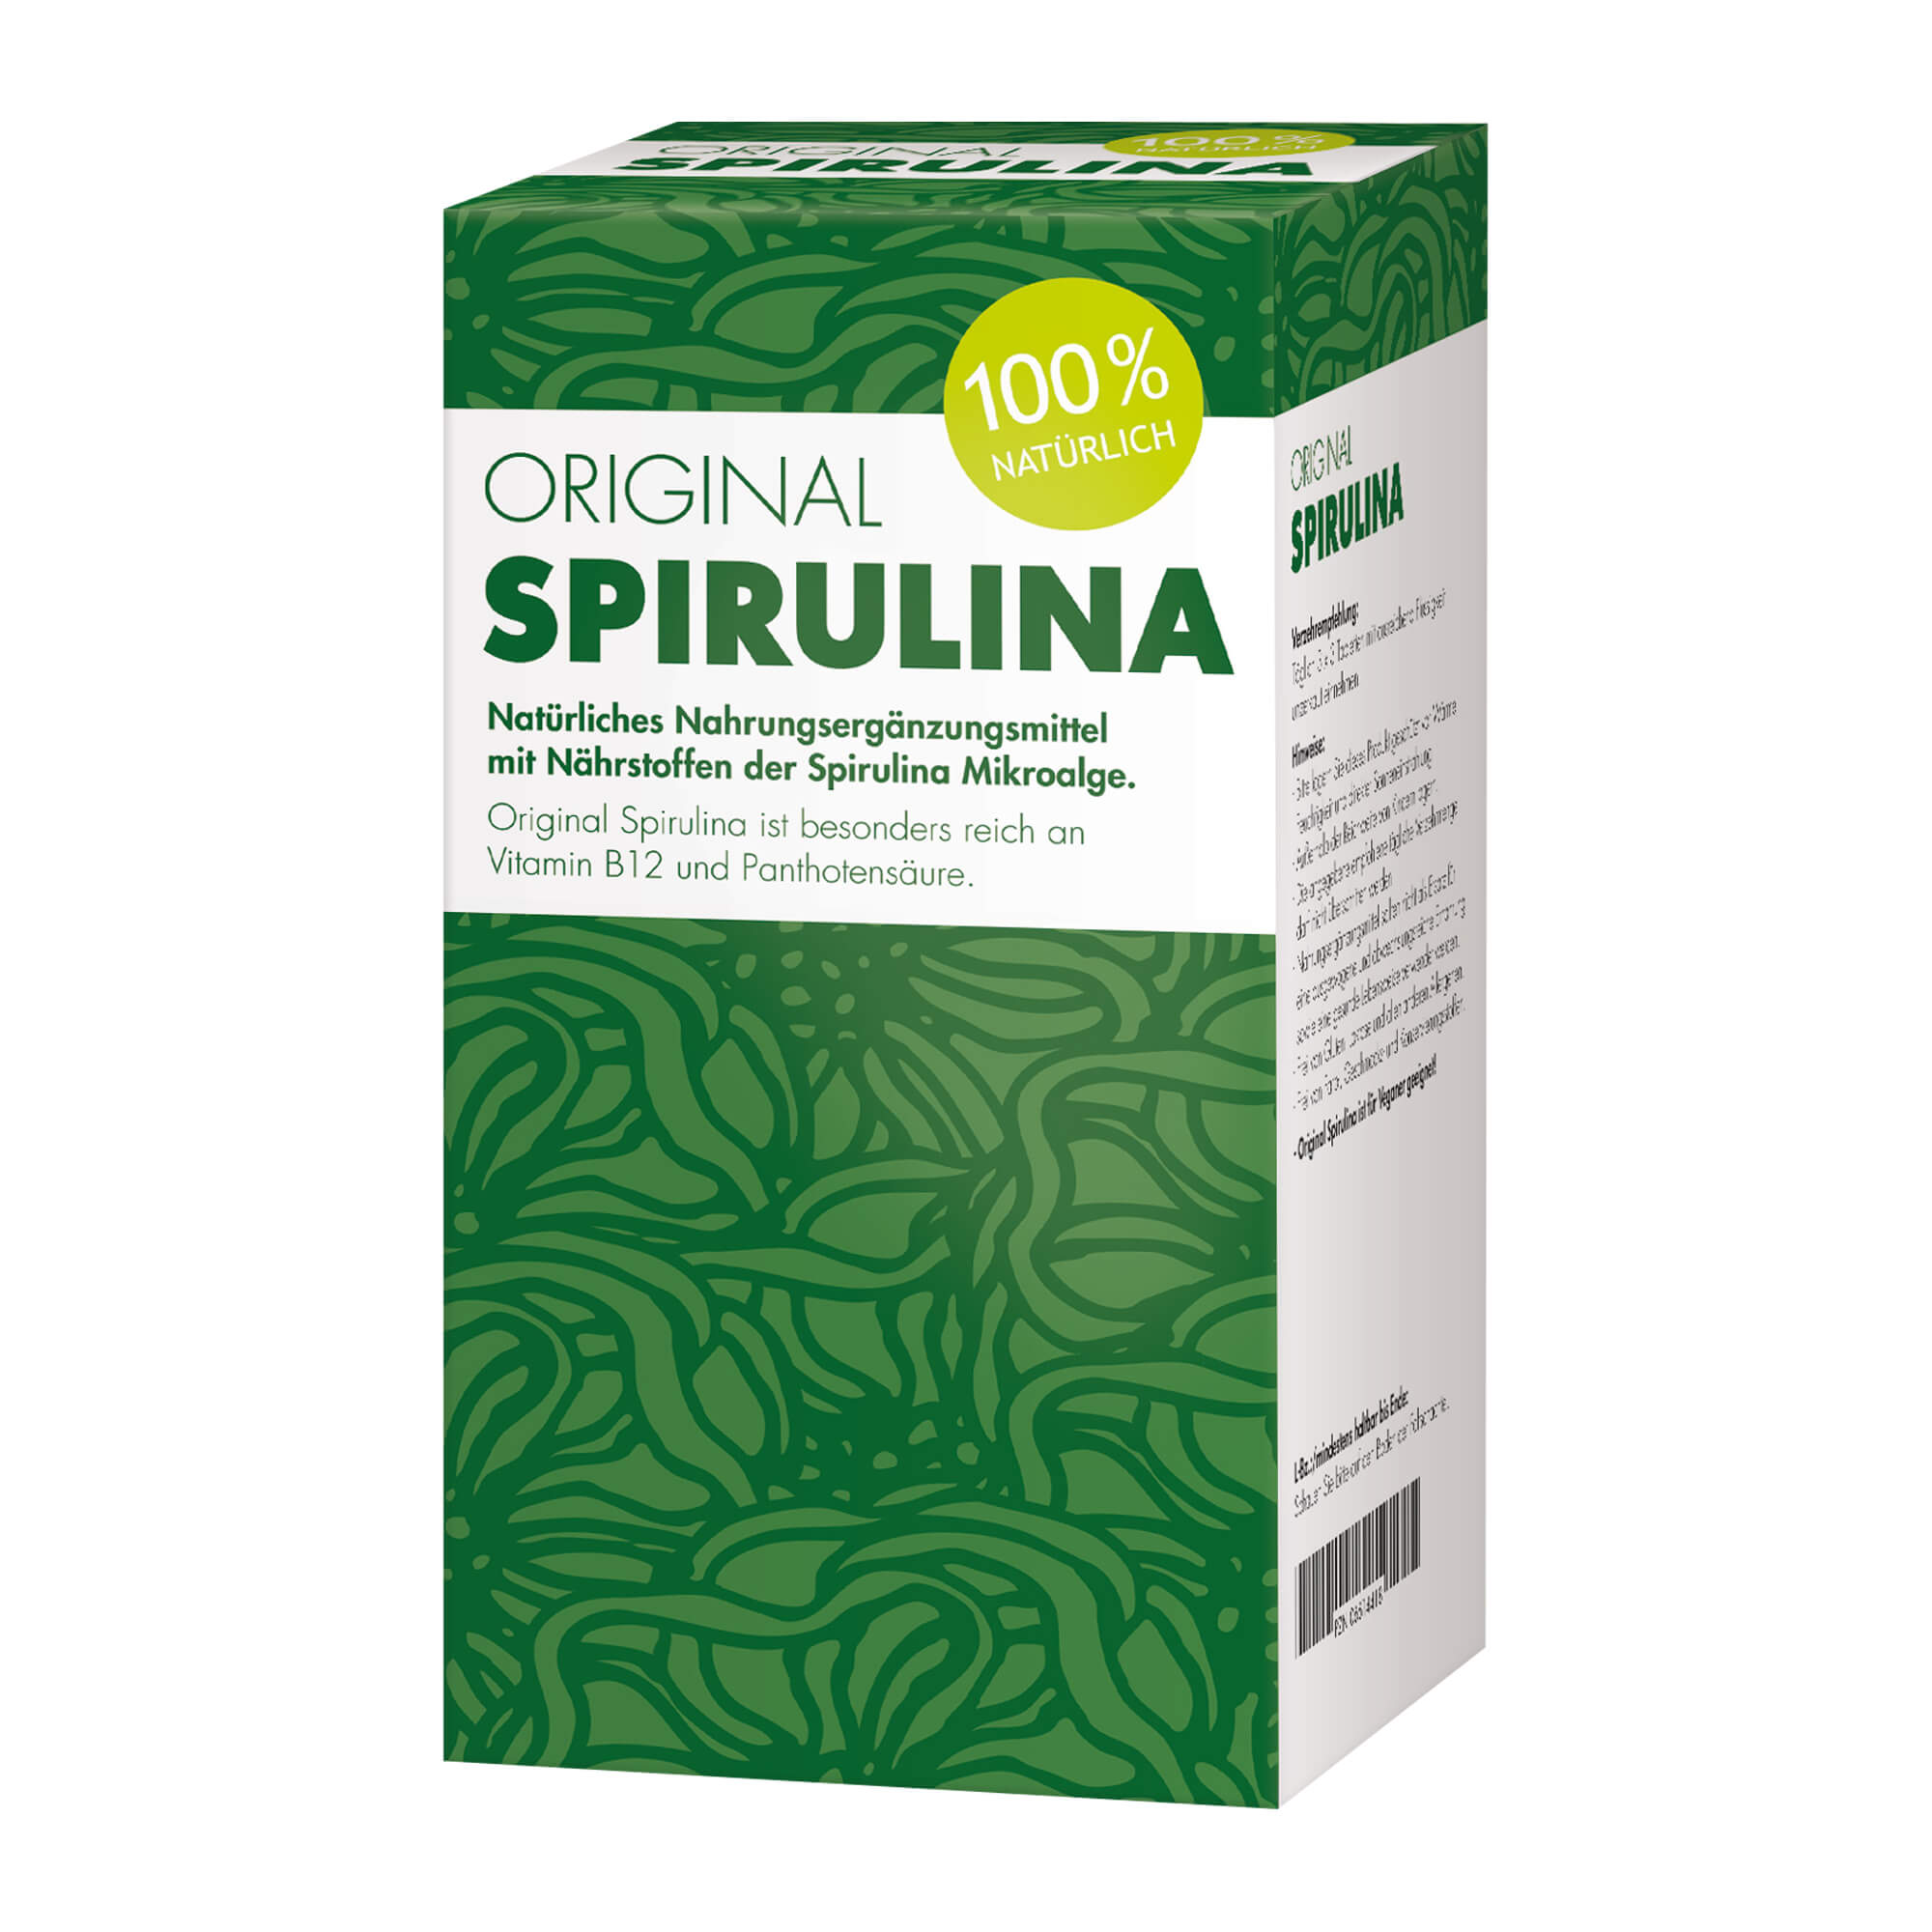 Rein pflanzliches Nahrungsergänzungsmittel mit Spirulina Algen.